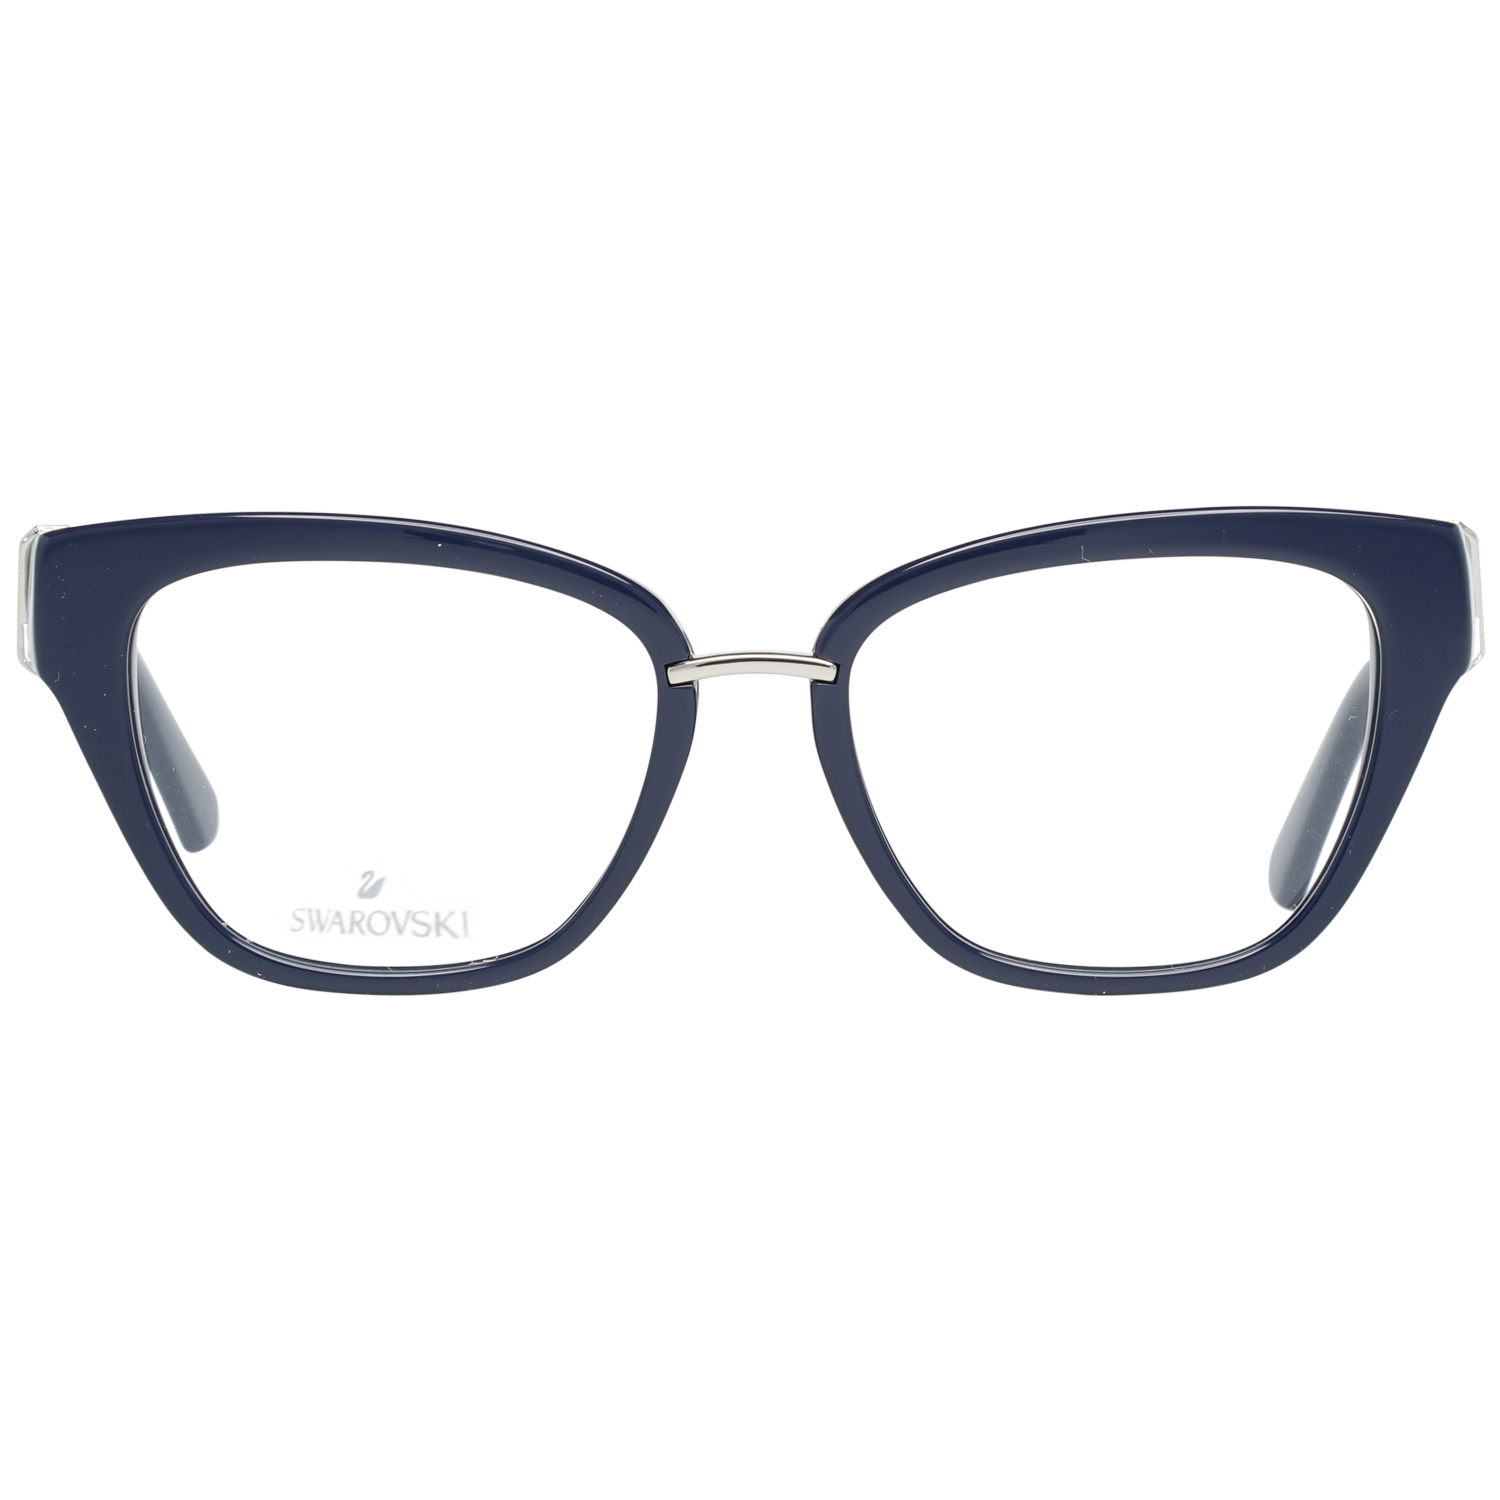 Swarovski Frames Swarovski Women Glasses Optical Frame SK5251 090 50 Eyeglasses Eyewear UK USA Australia 